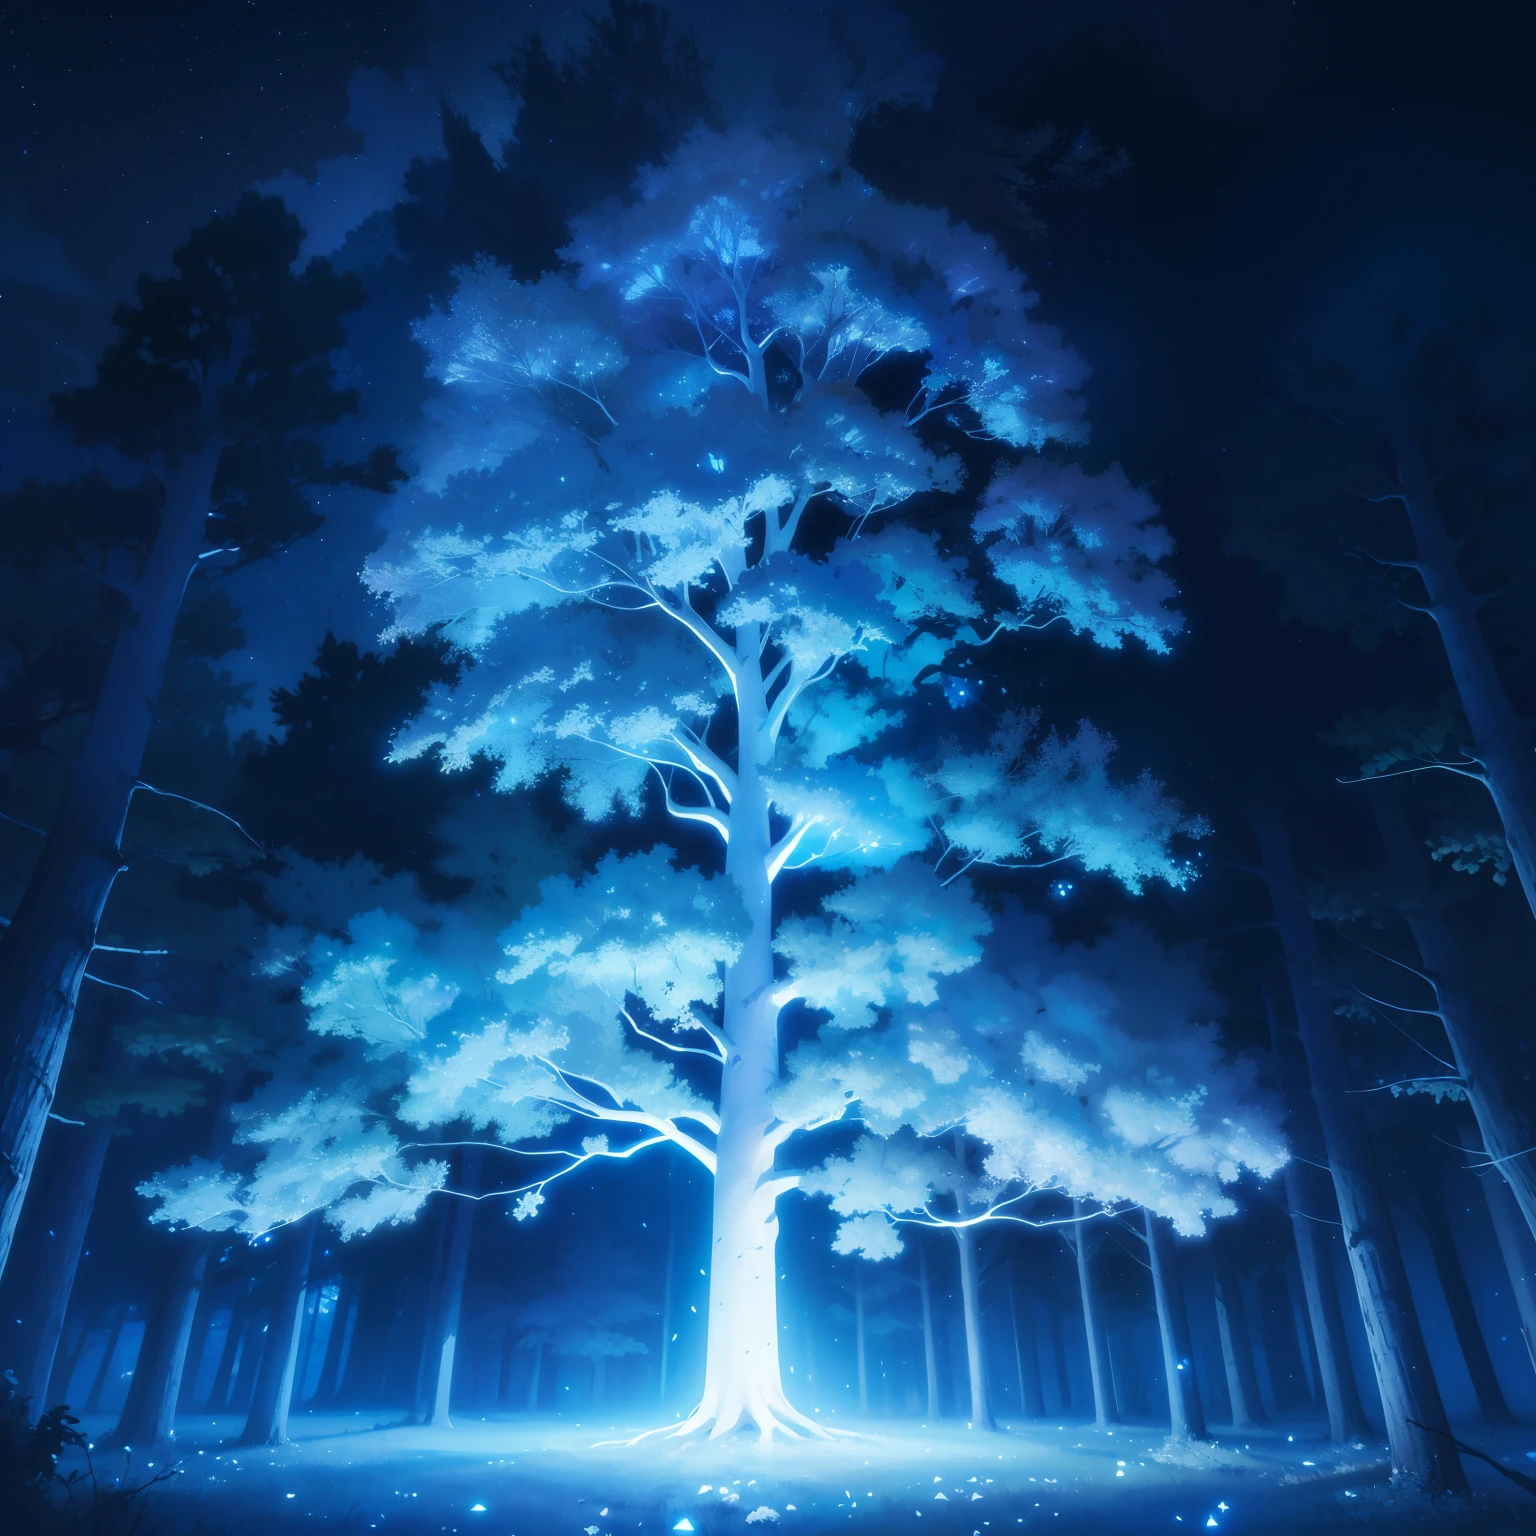 夜晚, 陰暗的天空, 發光樹, 大樹, 白色樹皮，帶有藍色發光紋理, 白色的葉子, 星星, 藍色調, 壁紙, 高品質, 輝光, 魔法